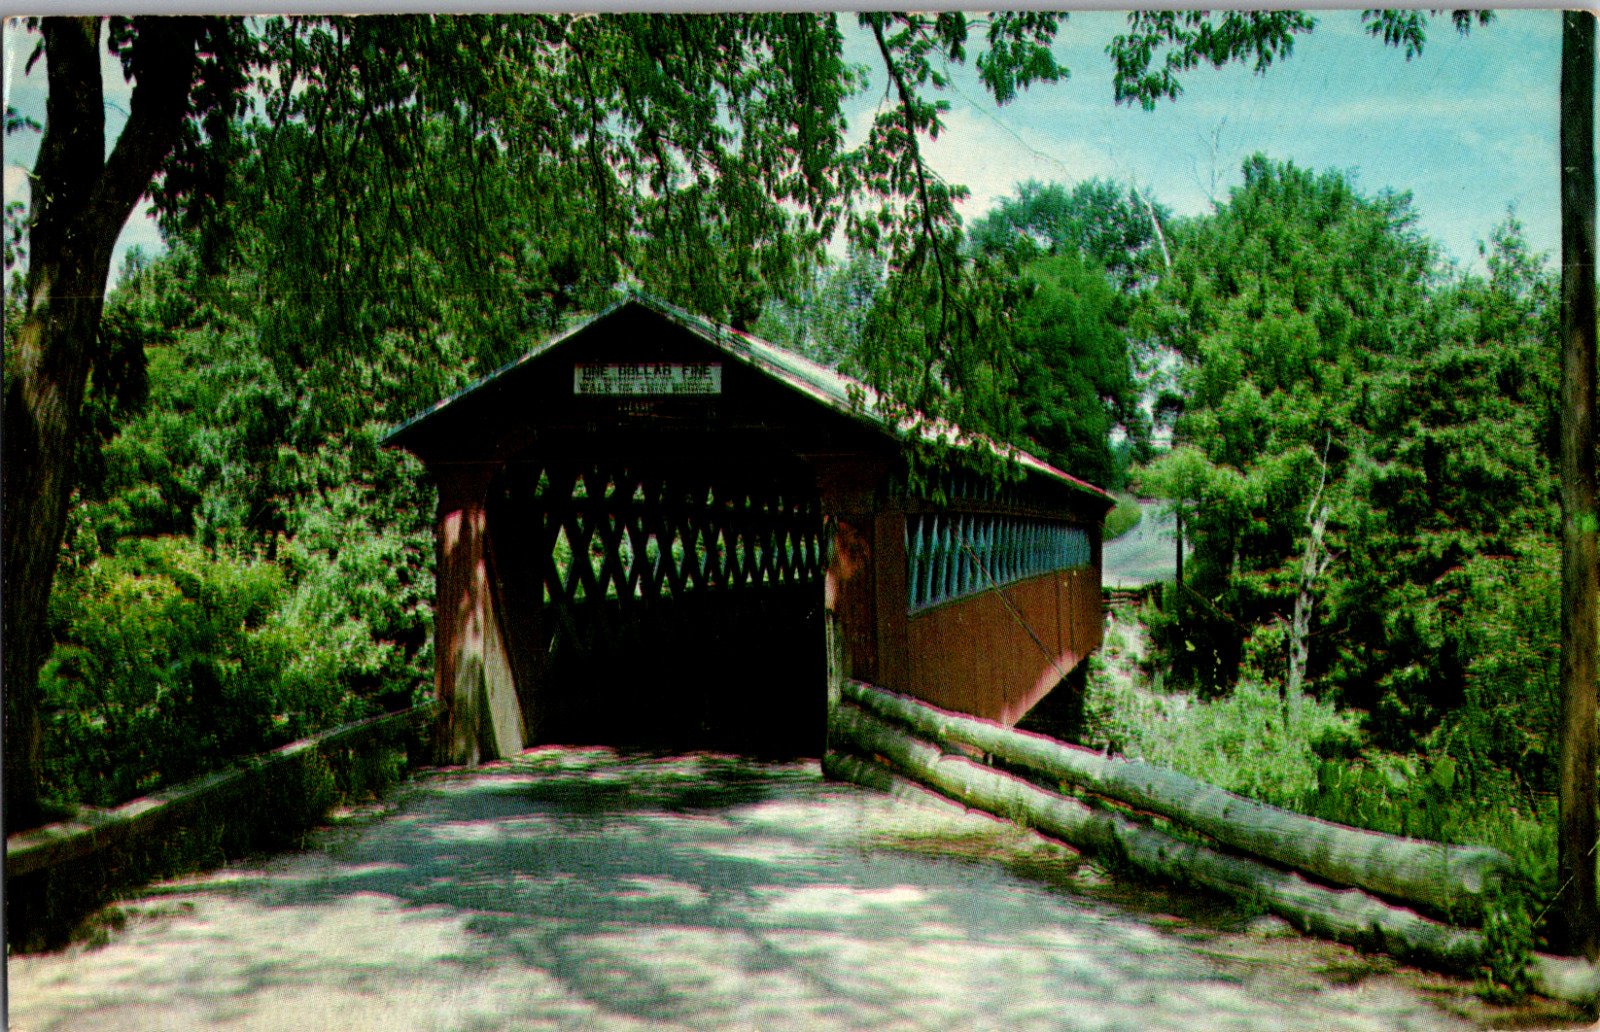 Vintage 1962 Chiselville Covered Bridge, East Arlington, Vermont VT Postcard